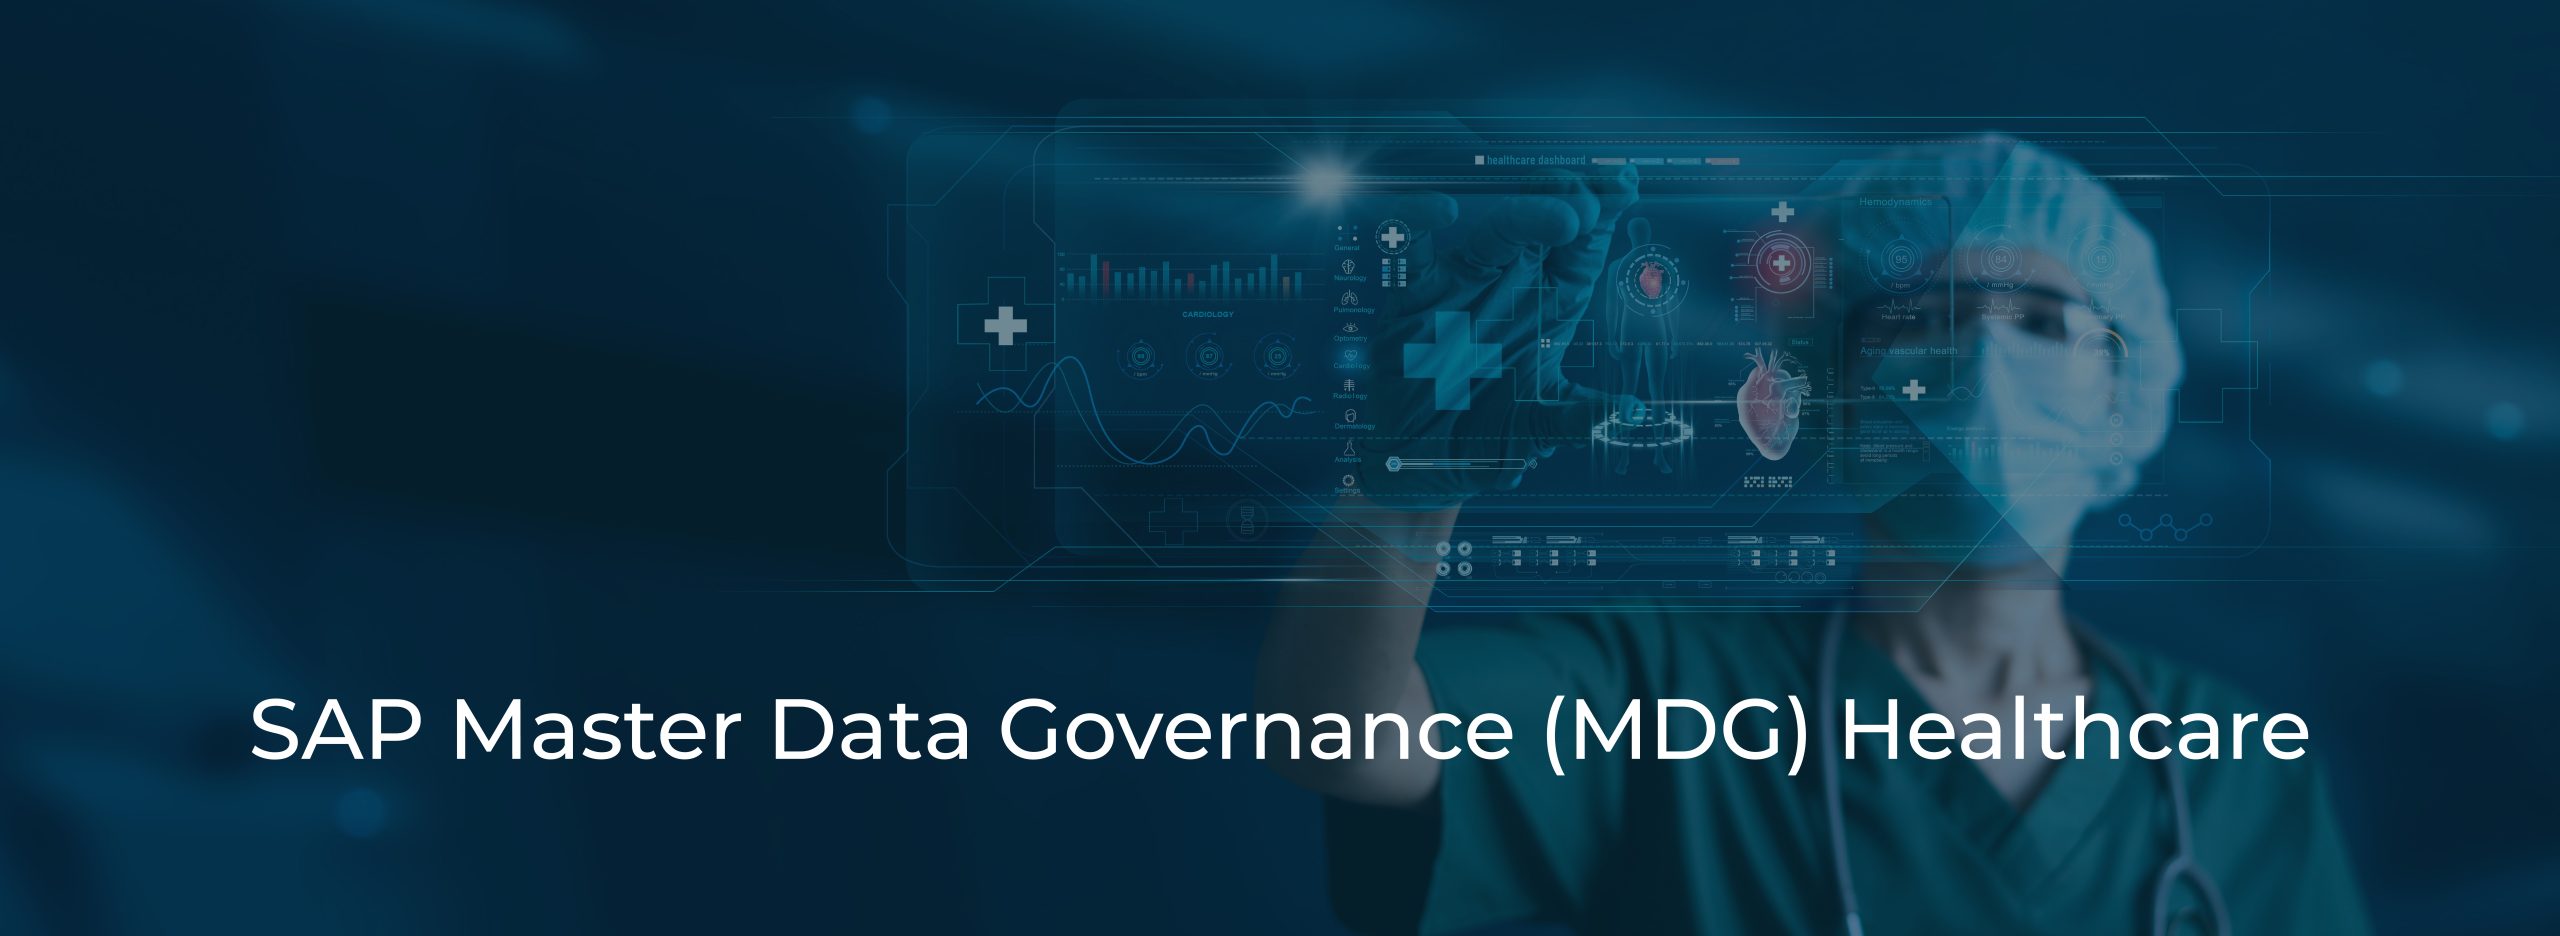 SAP Master Data Governance (MDG) Healthcare